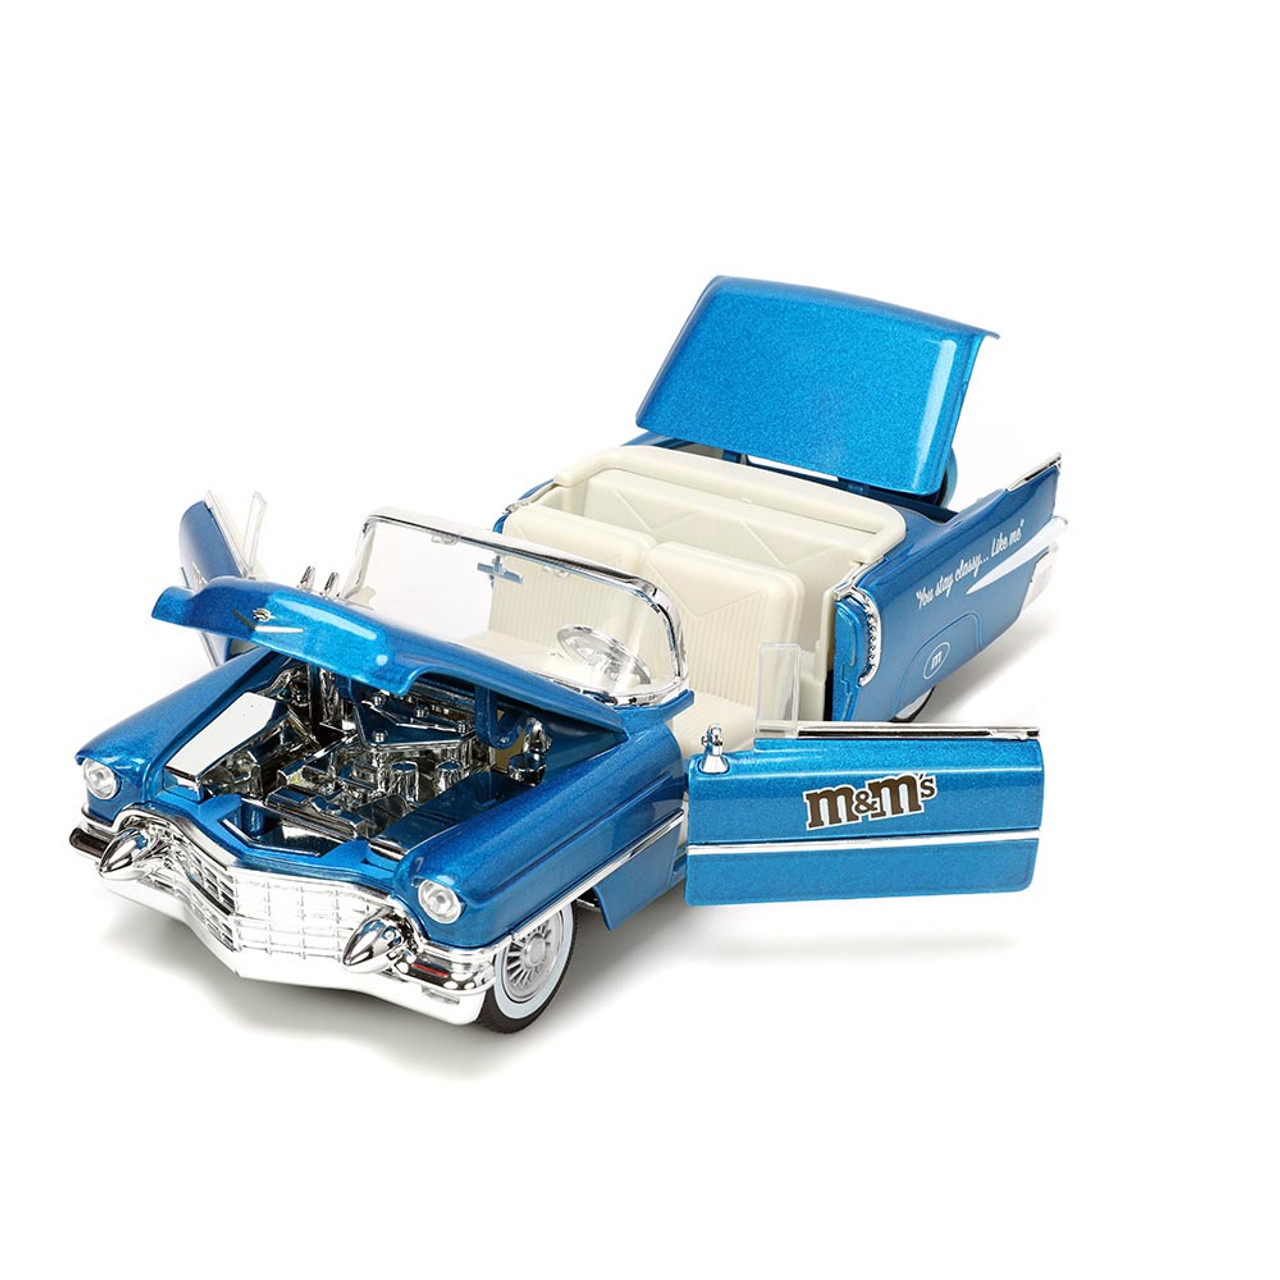  Jada Toys M&M's 4 Blue Die-cast Collectible Figure